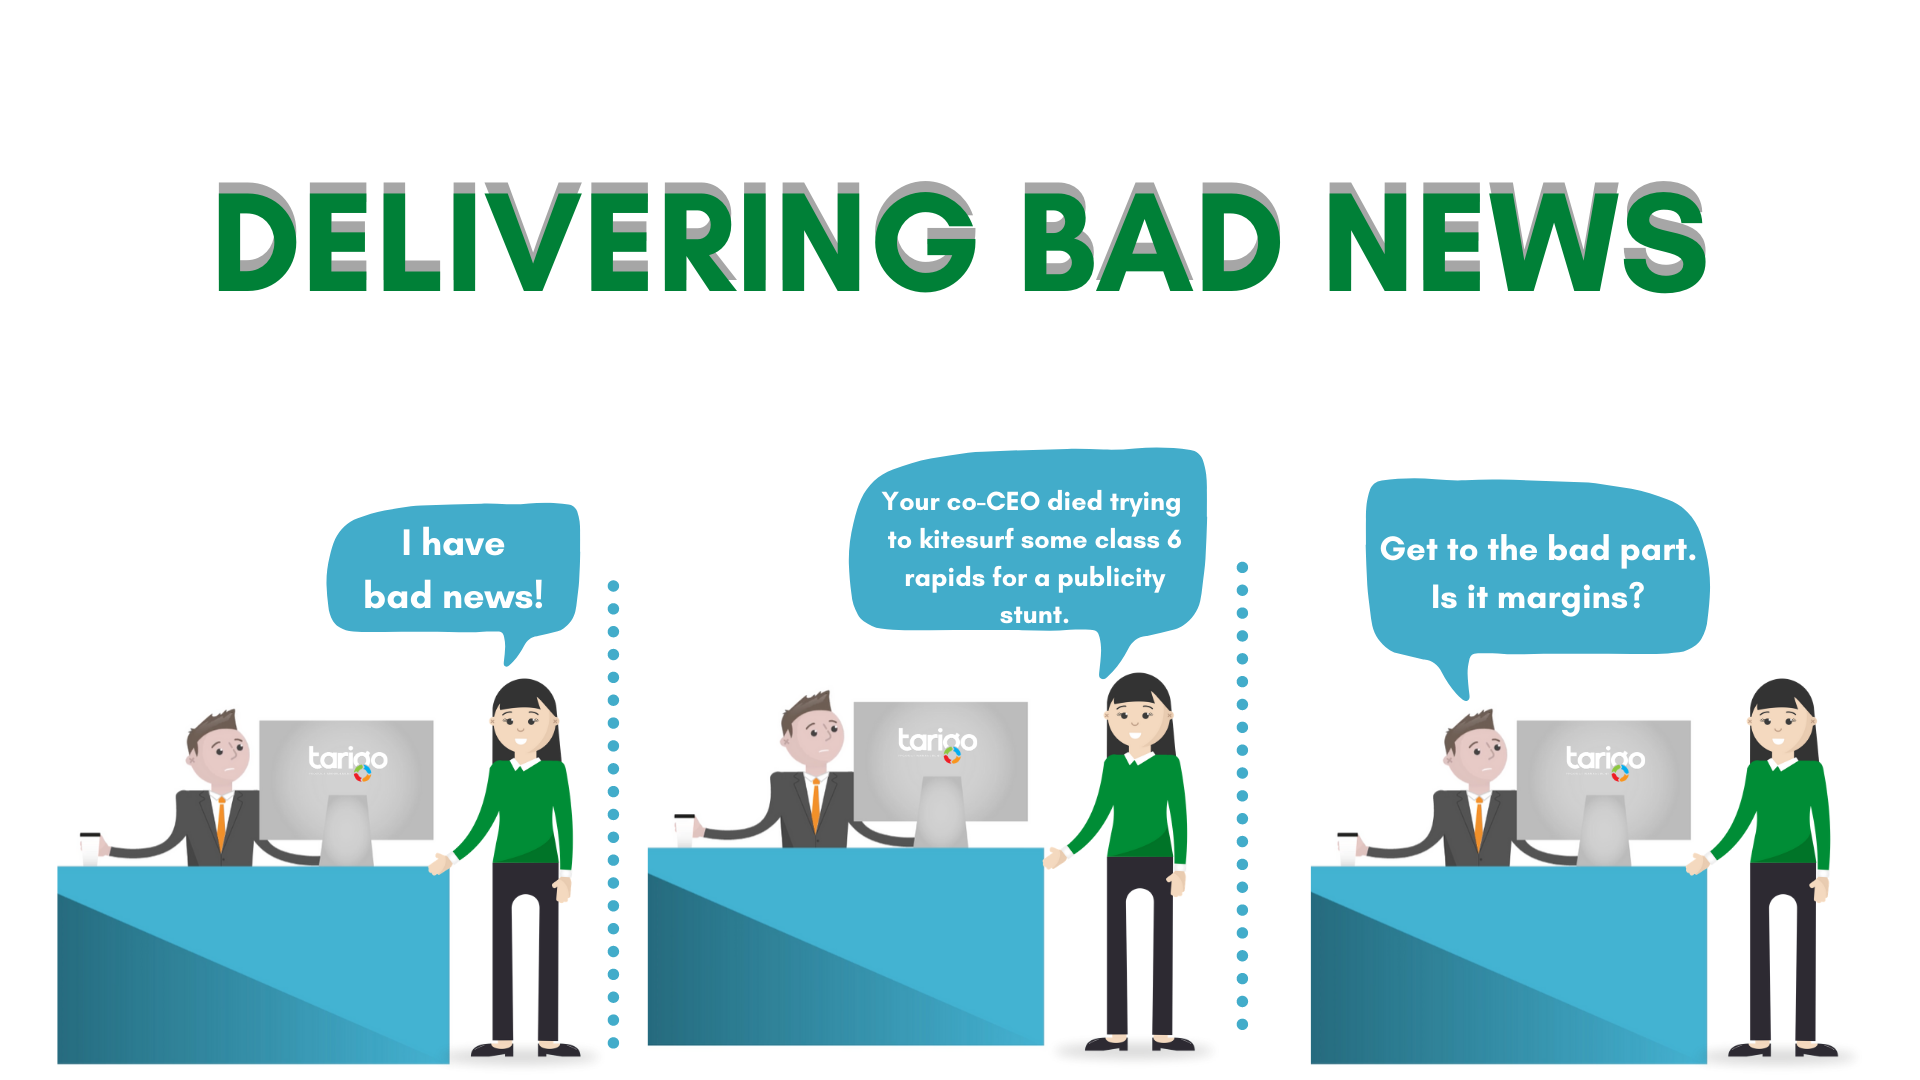 Tips for delivering bad news